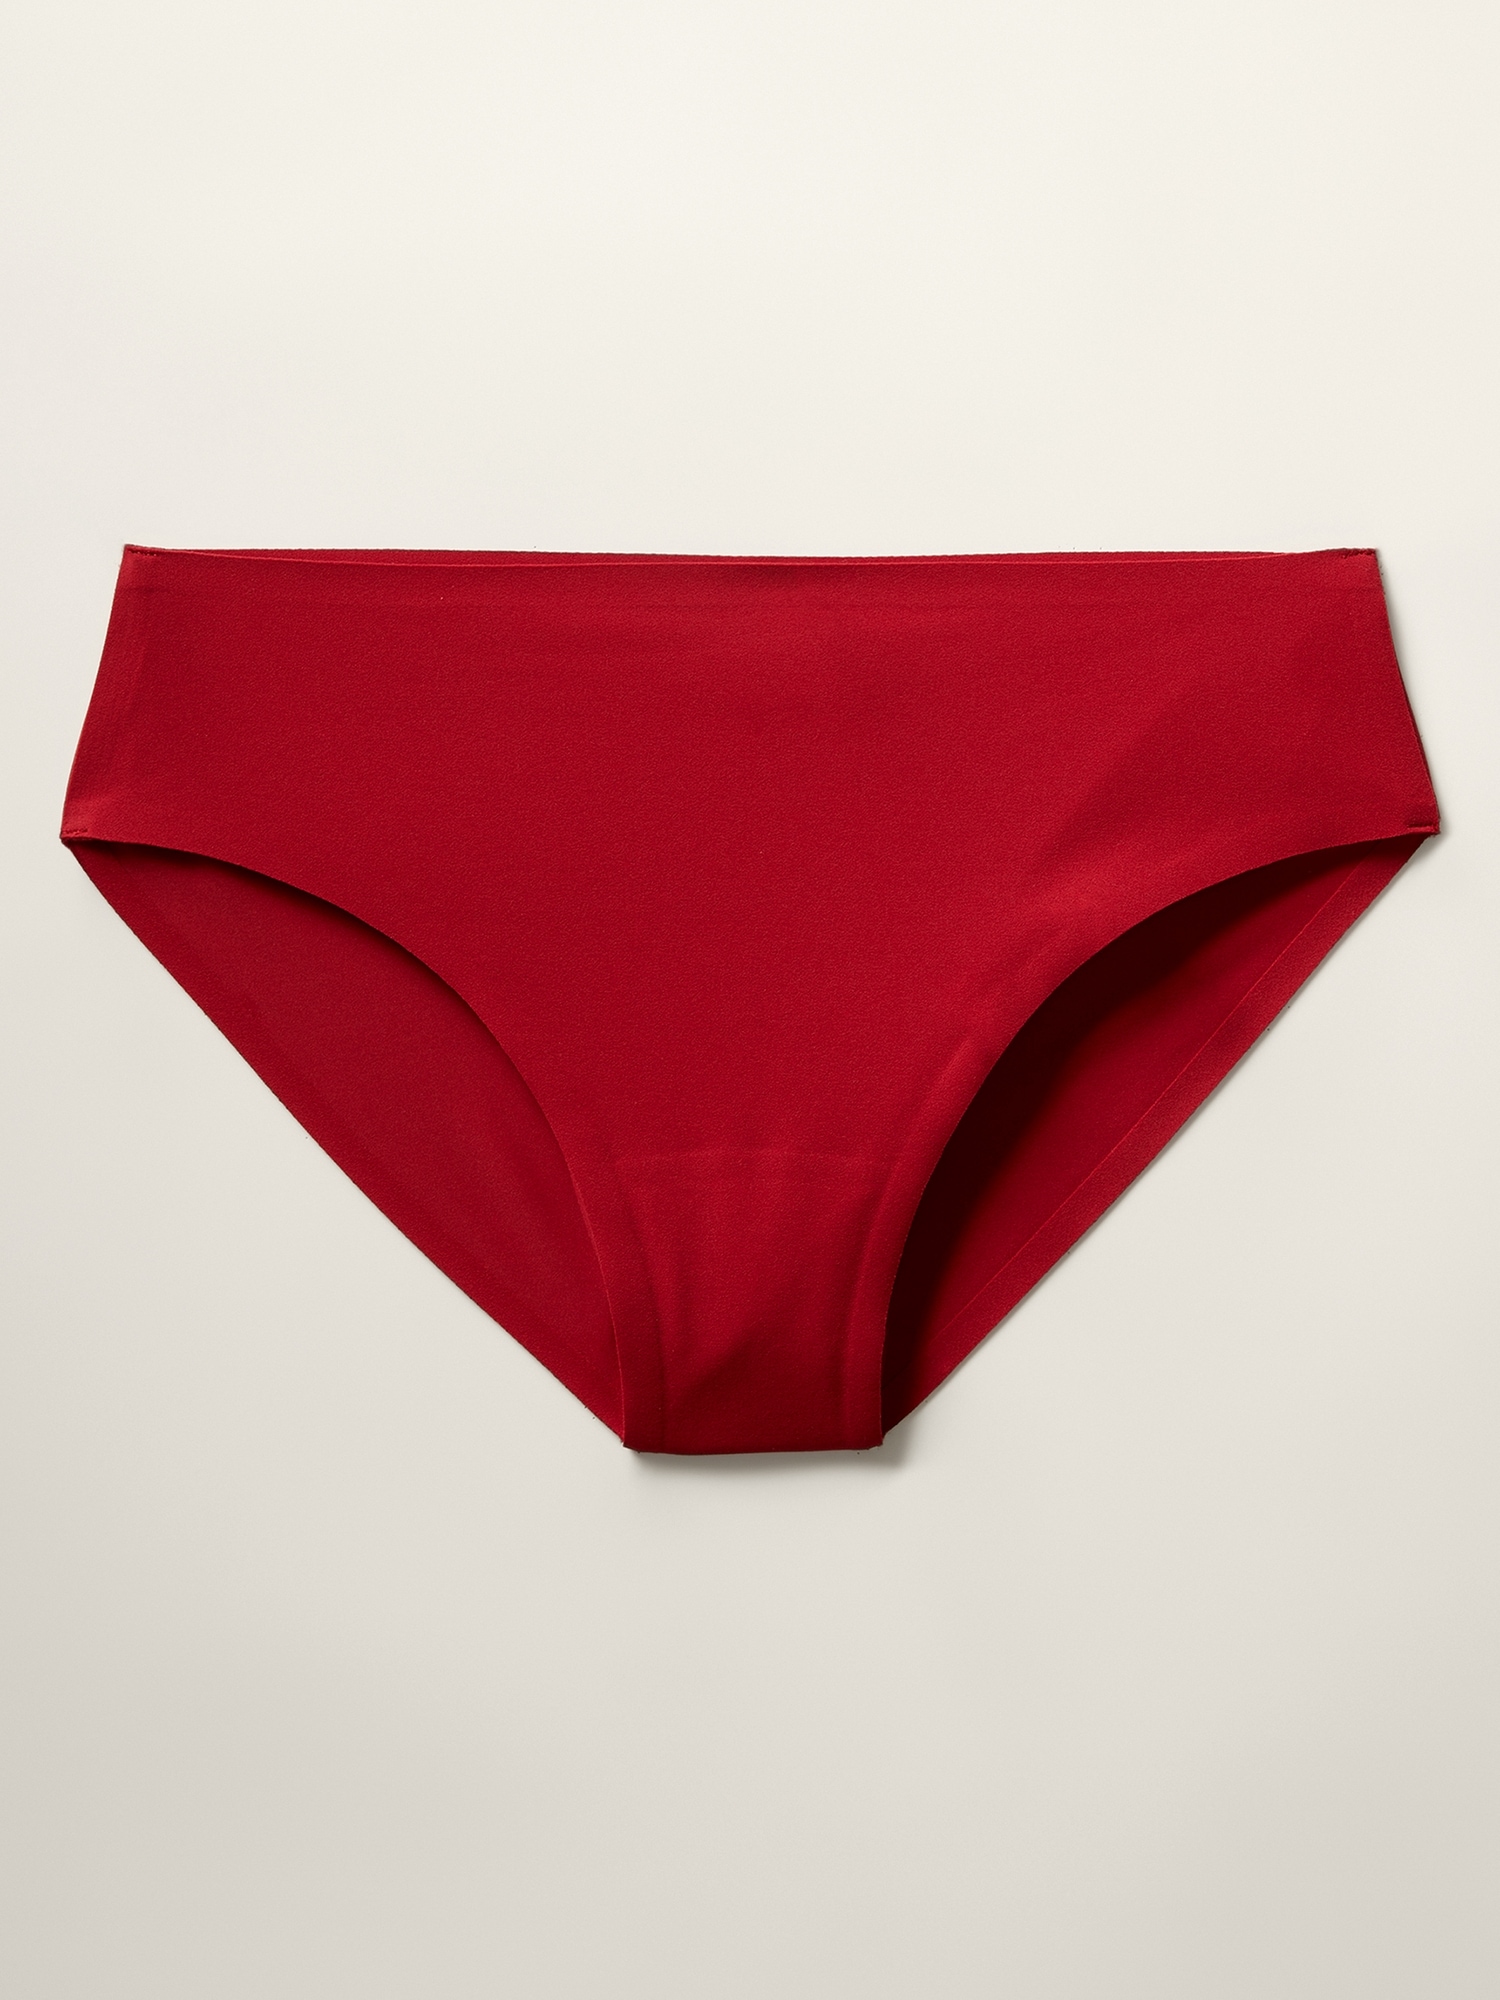 Ritual Bikini Underwear | Athleta